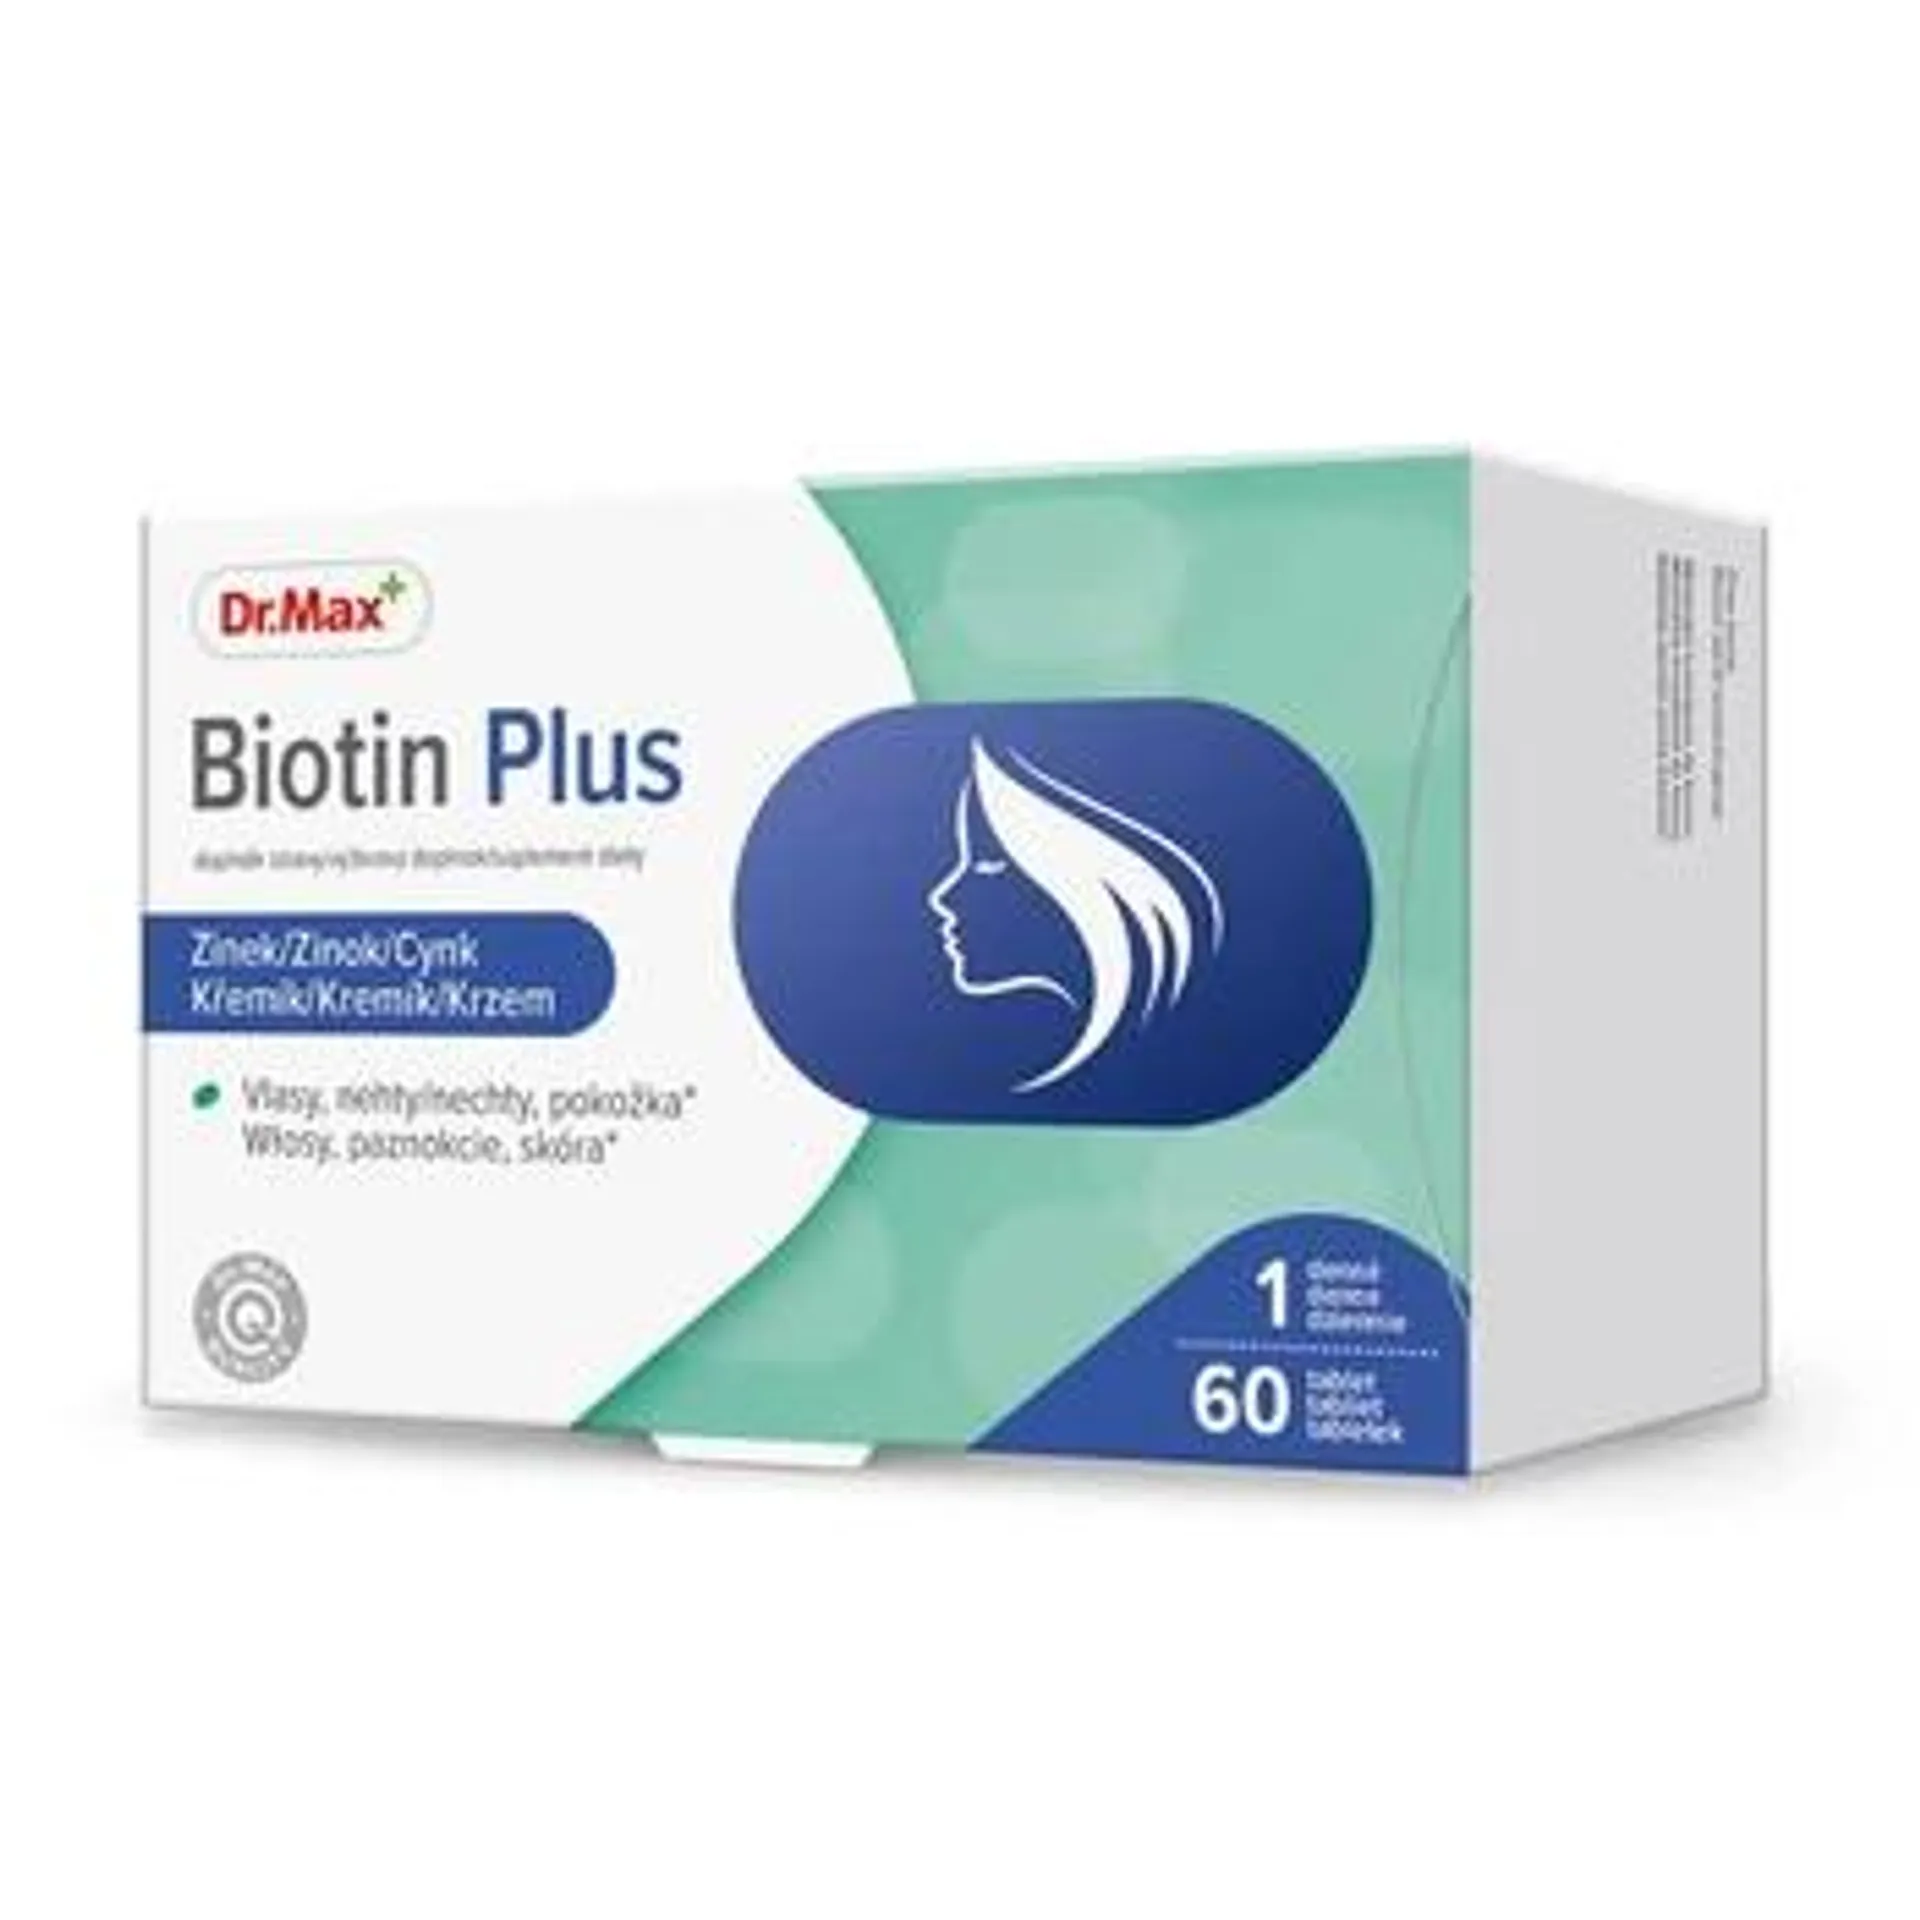 Dr. Max Biotin Plus 60 tablet